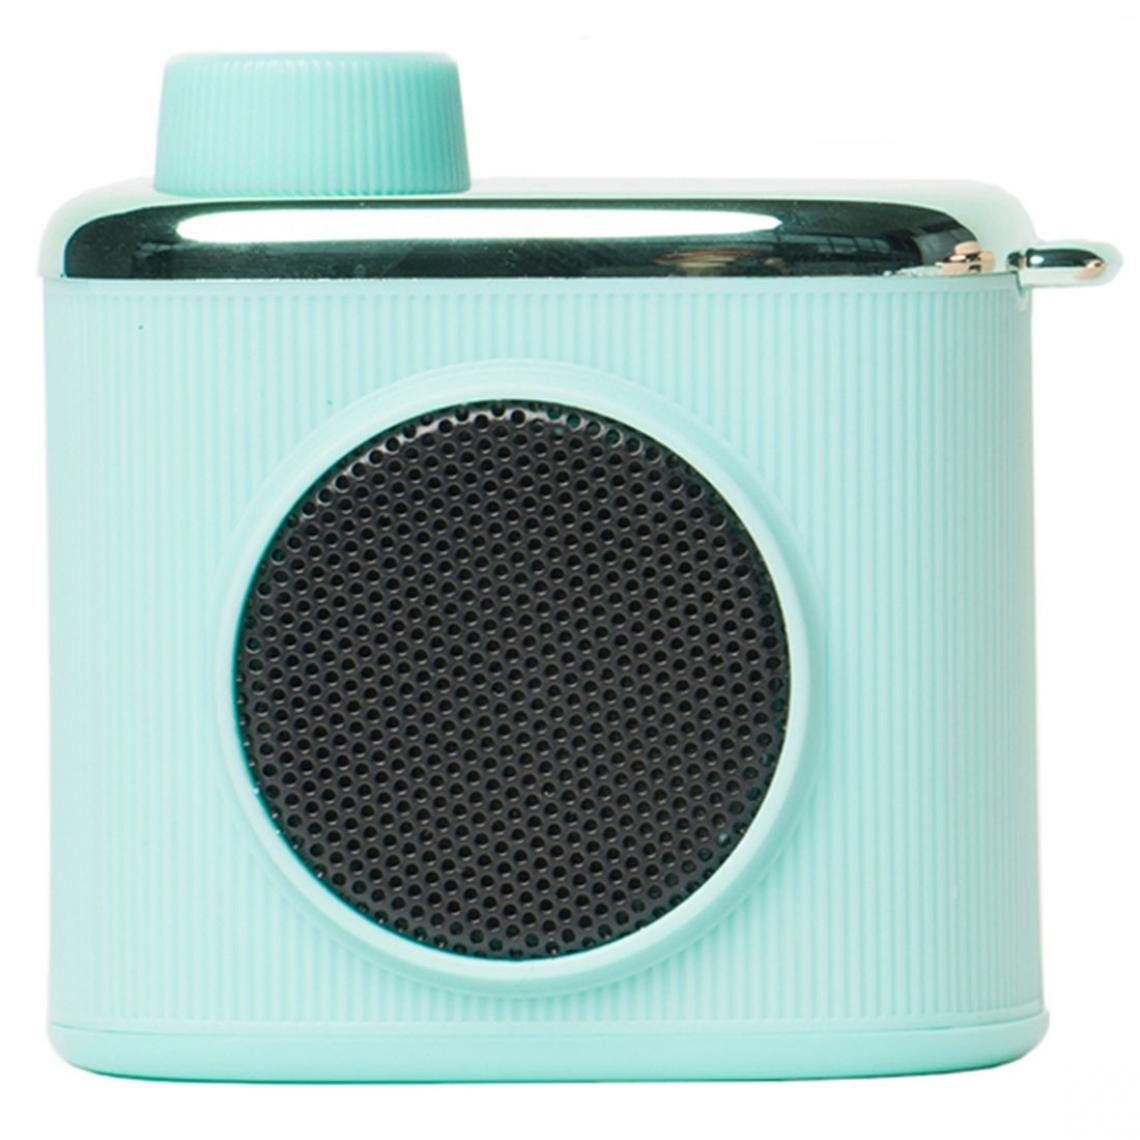 Wewoo - Enceinte Bluetooth CM-2 Mini haut-parleur avec caméra en forme de 3W mini-cordon vert - Enceintes Hifi